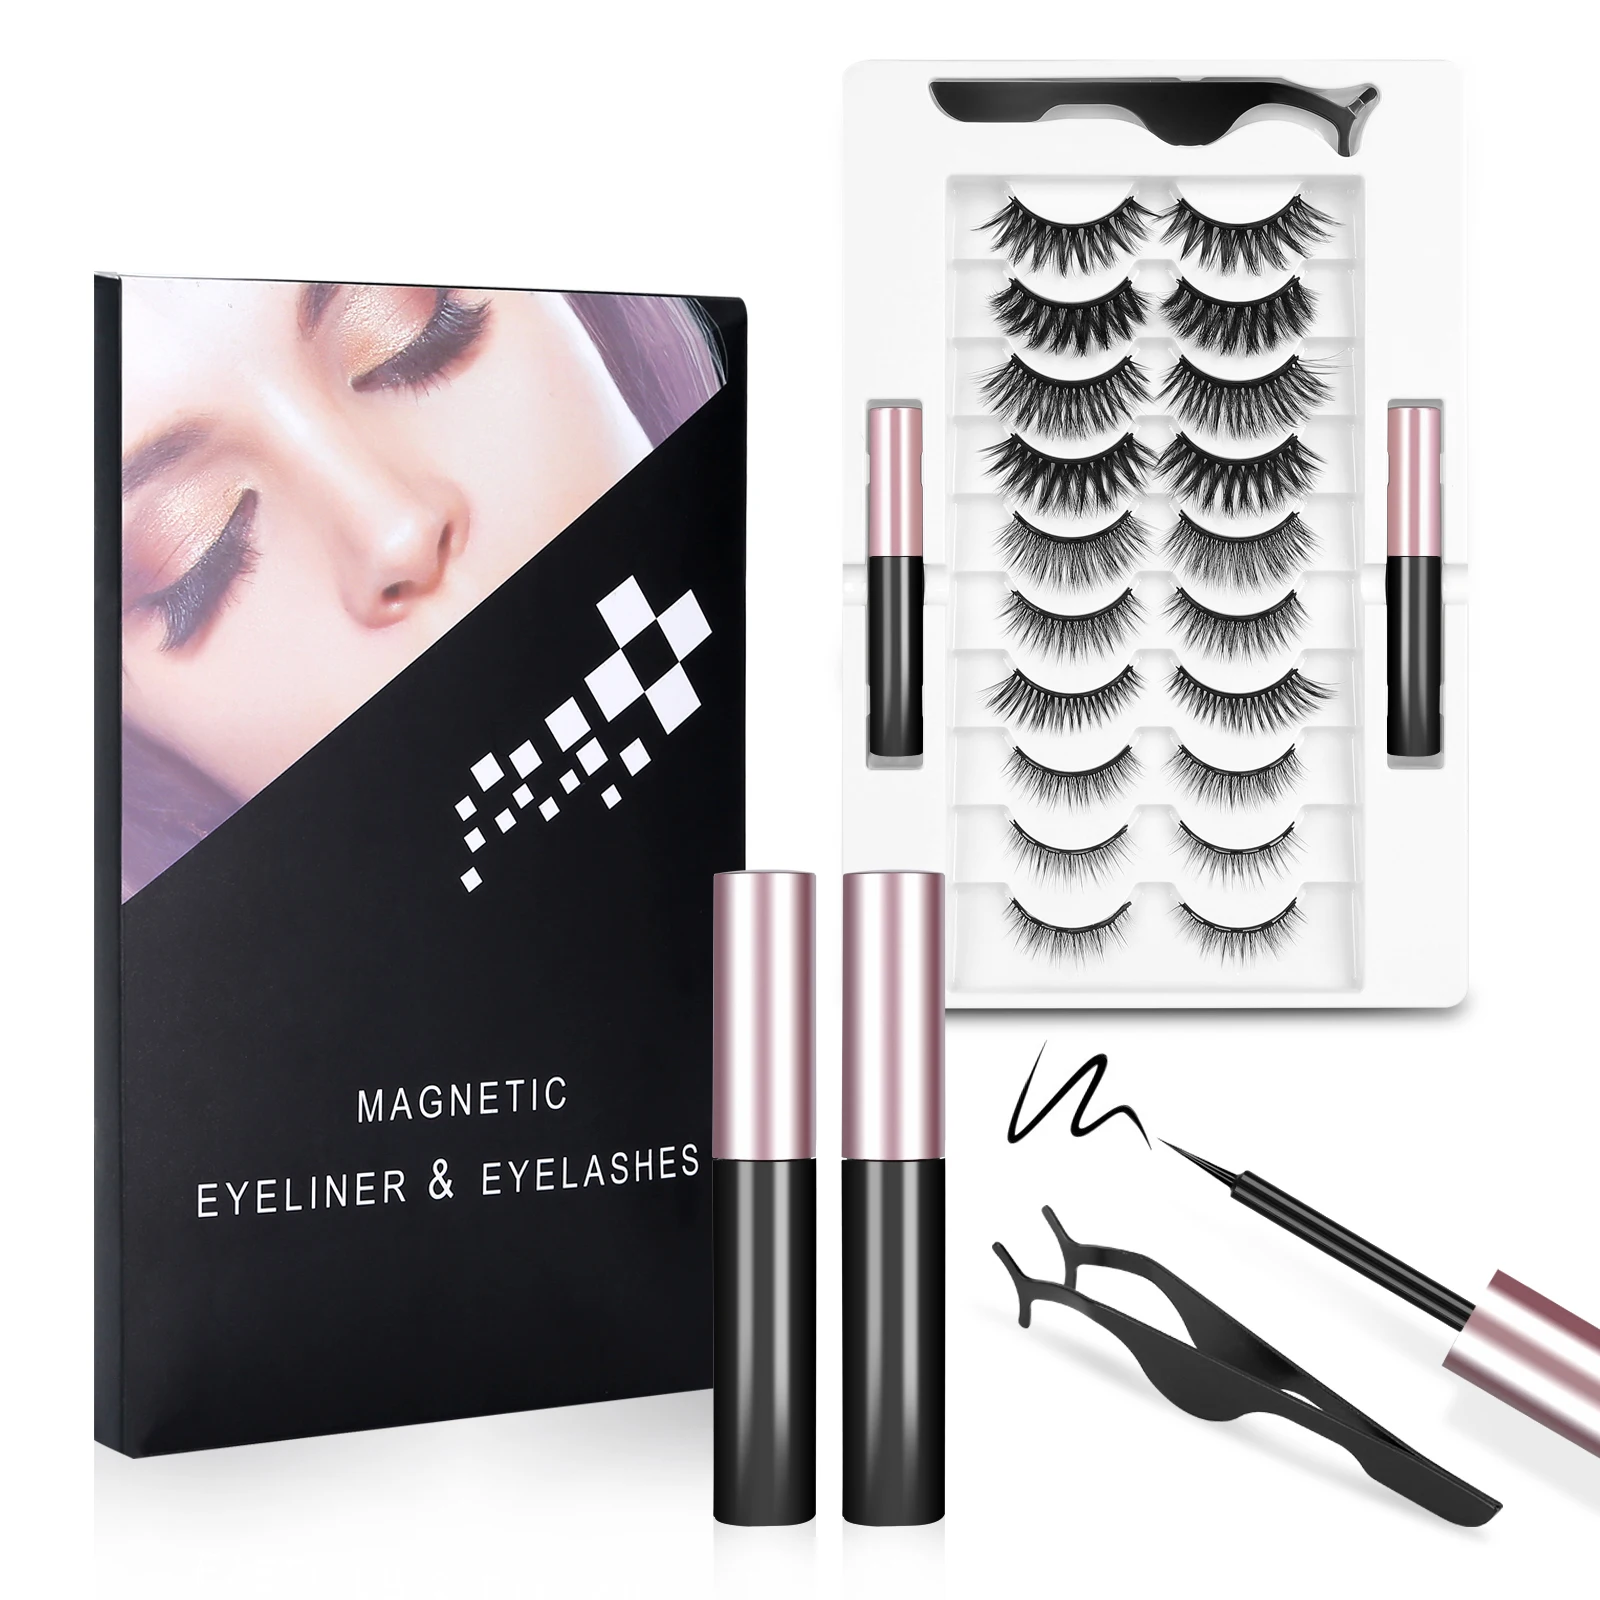 10 Pairs Magnetic Eyelashes 2pcs Eyeliner, 3D False Eyelashes, With Tweezers, Magnetic Eyeliner & Magnetic Eyelash Kit for Women